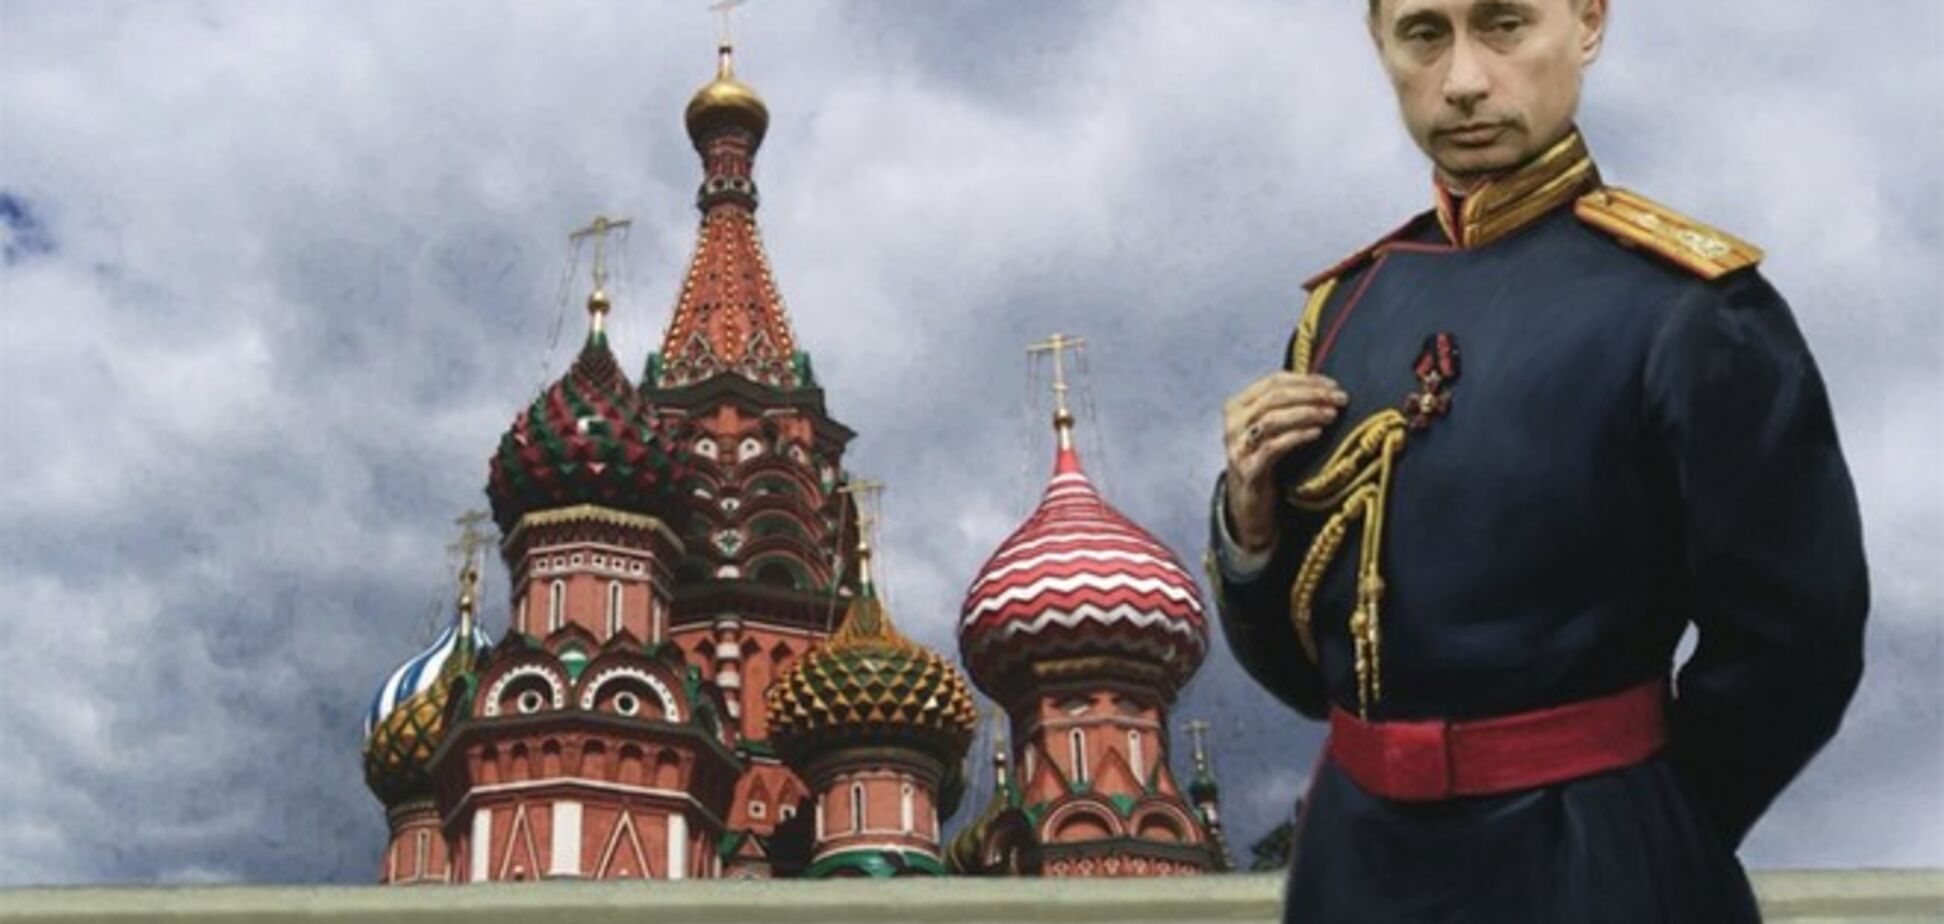 МИД России сравнил величие Путина с 'измельчанием' лидеров Запада